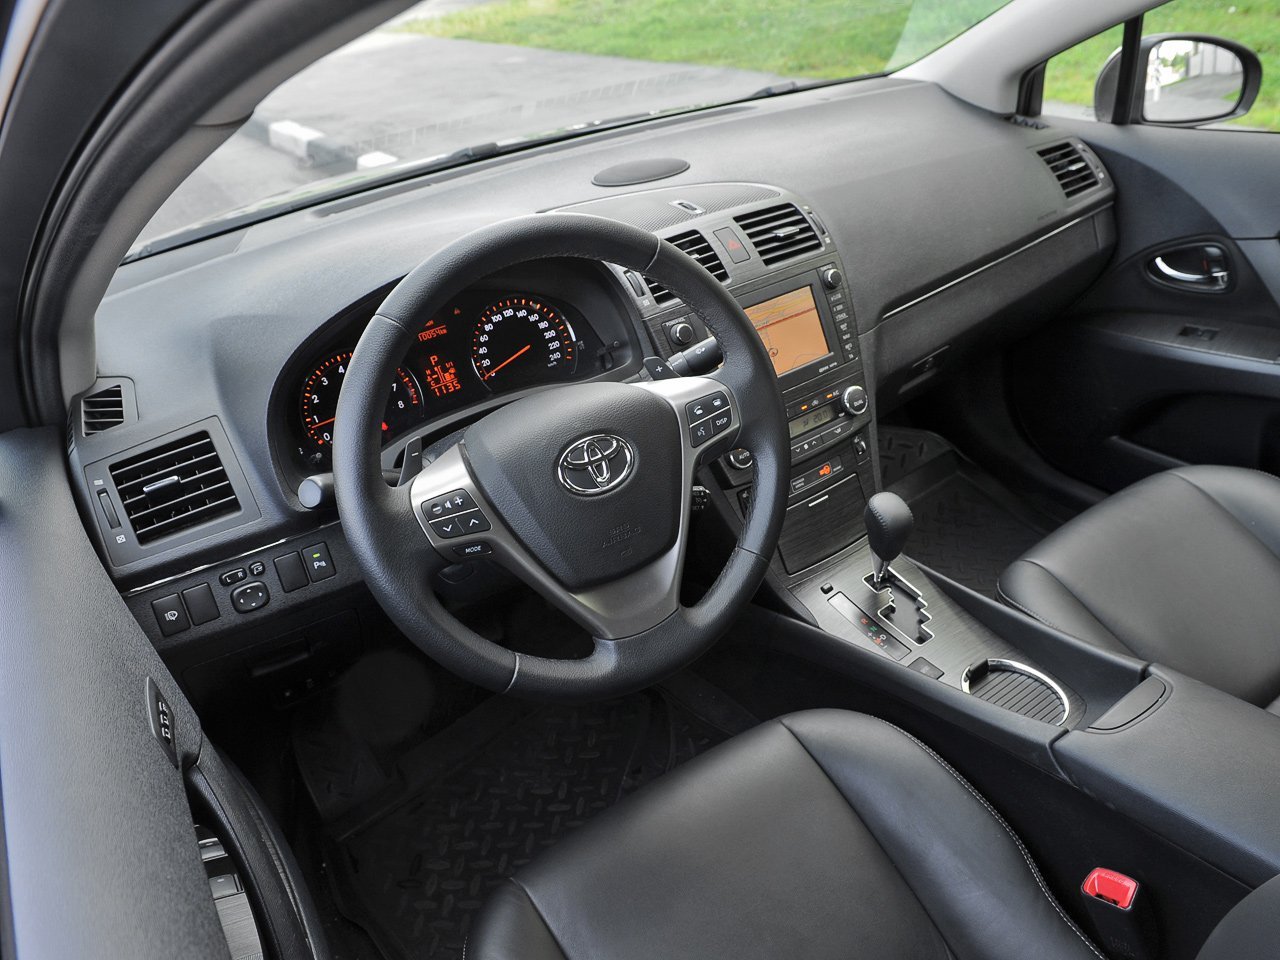 универсал Toyota Avensis 2009 - 2011г выпуска модификация Элеганс 1.8 CVT (147 л.с.)